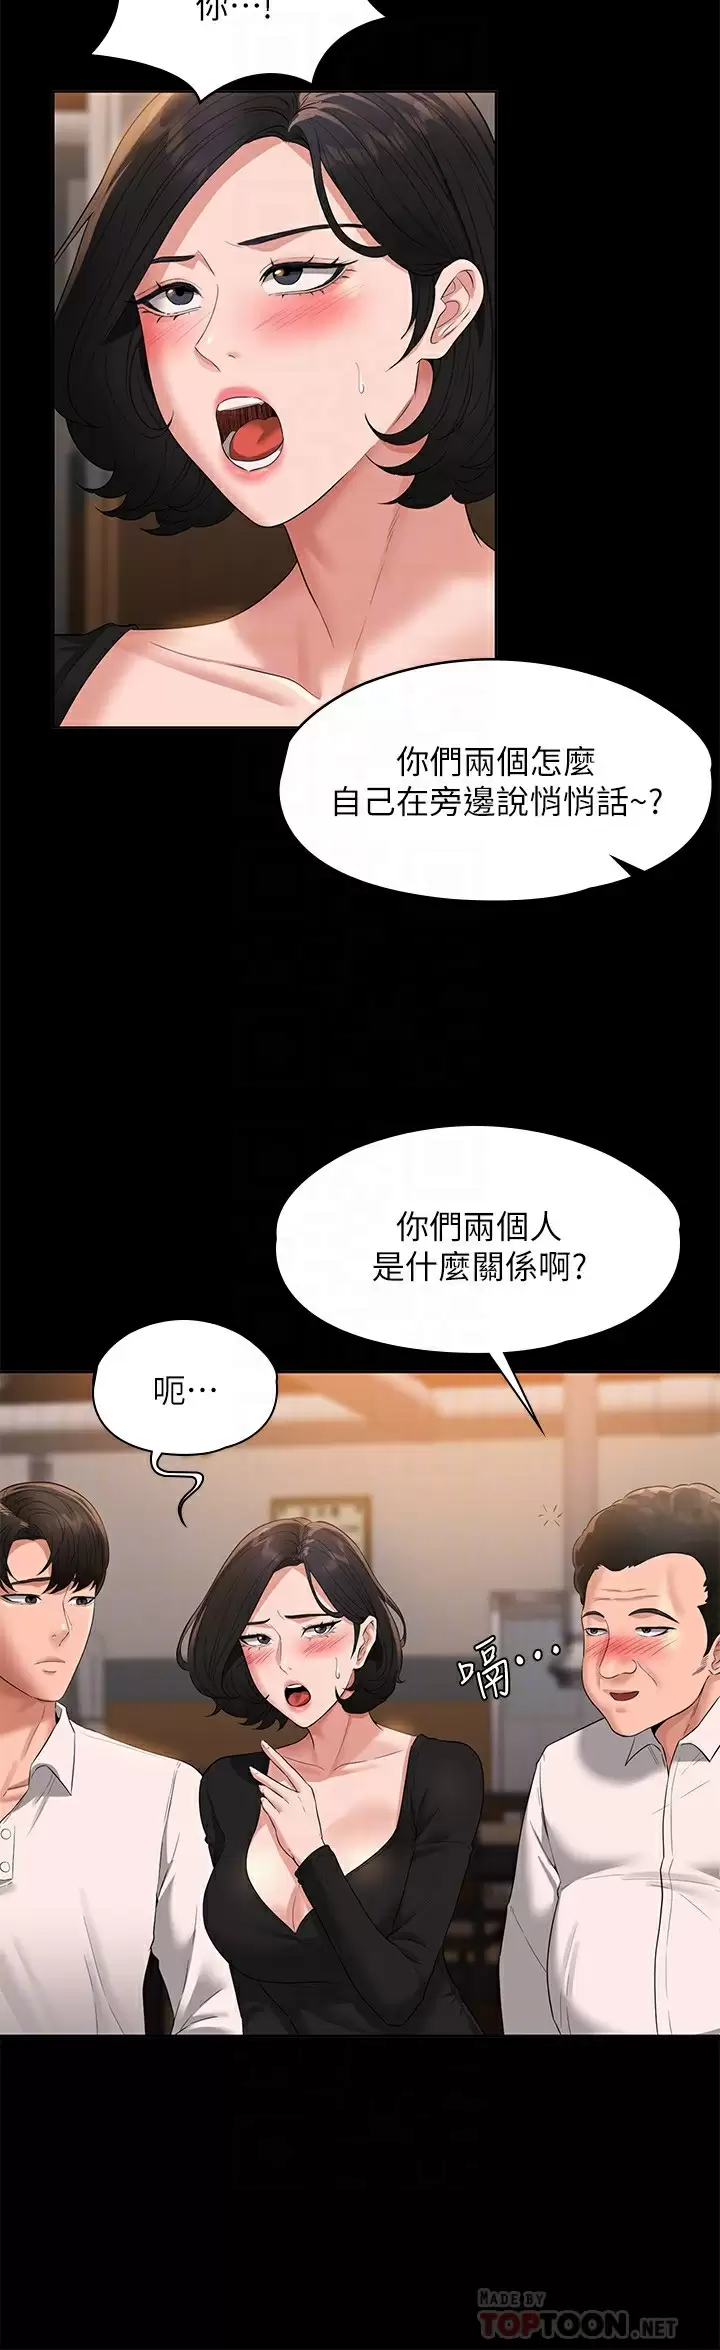 韩国污漫画 超級公務員 第47话 让人羞耻的淫乱震动声 6